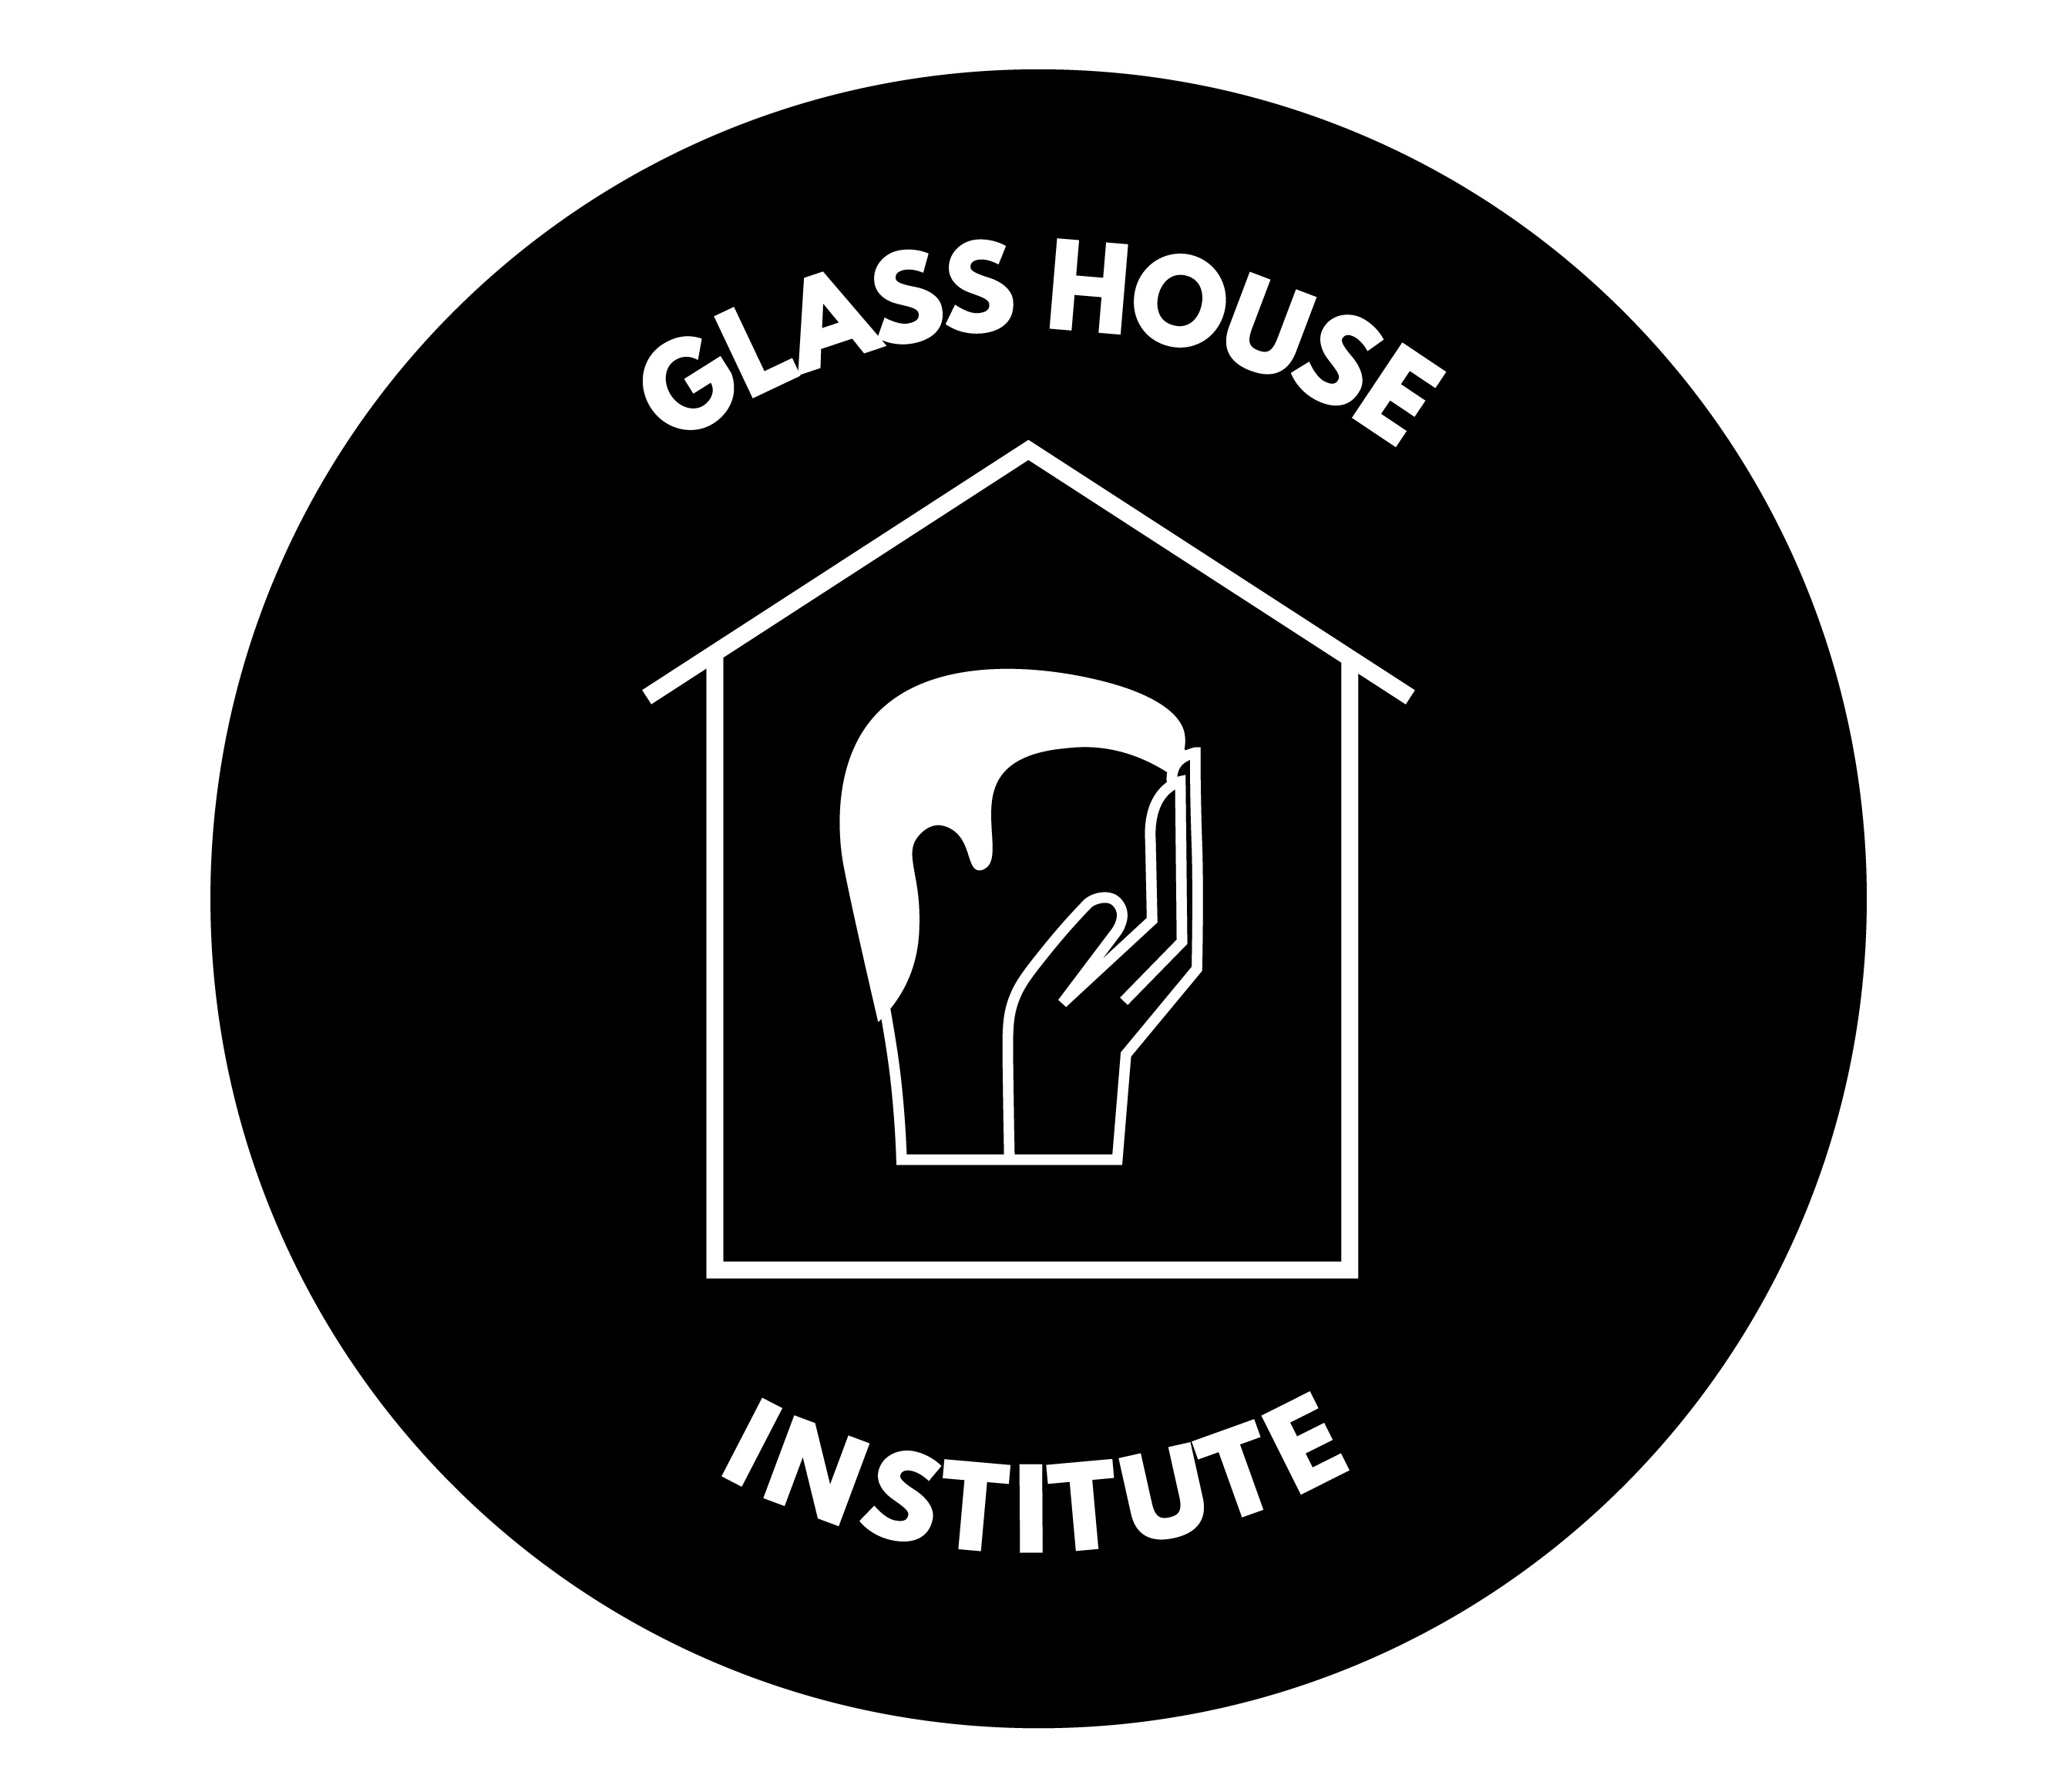  Glasshouse Institute